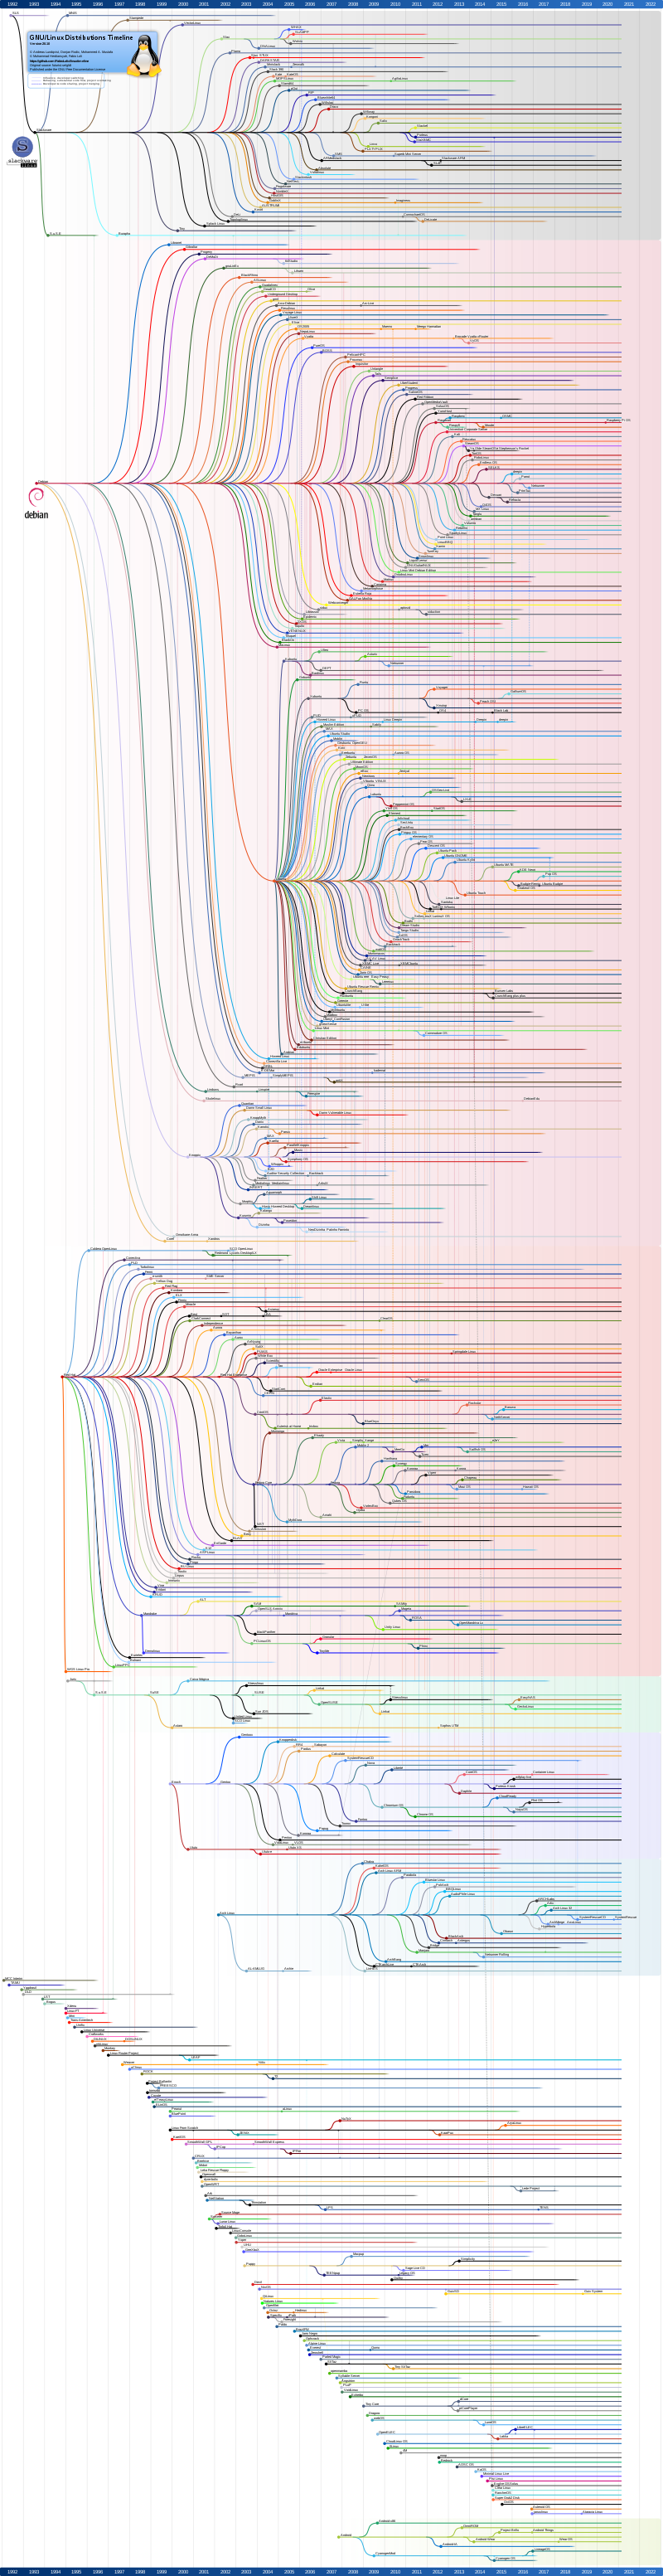 Linux_Distribution_Timeline_27_02_21.svg.png